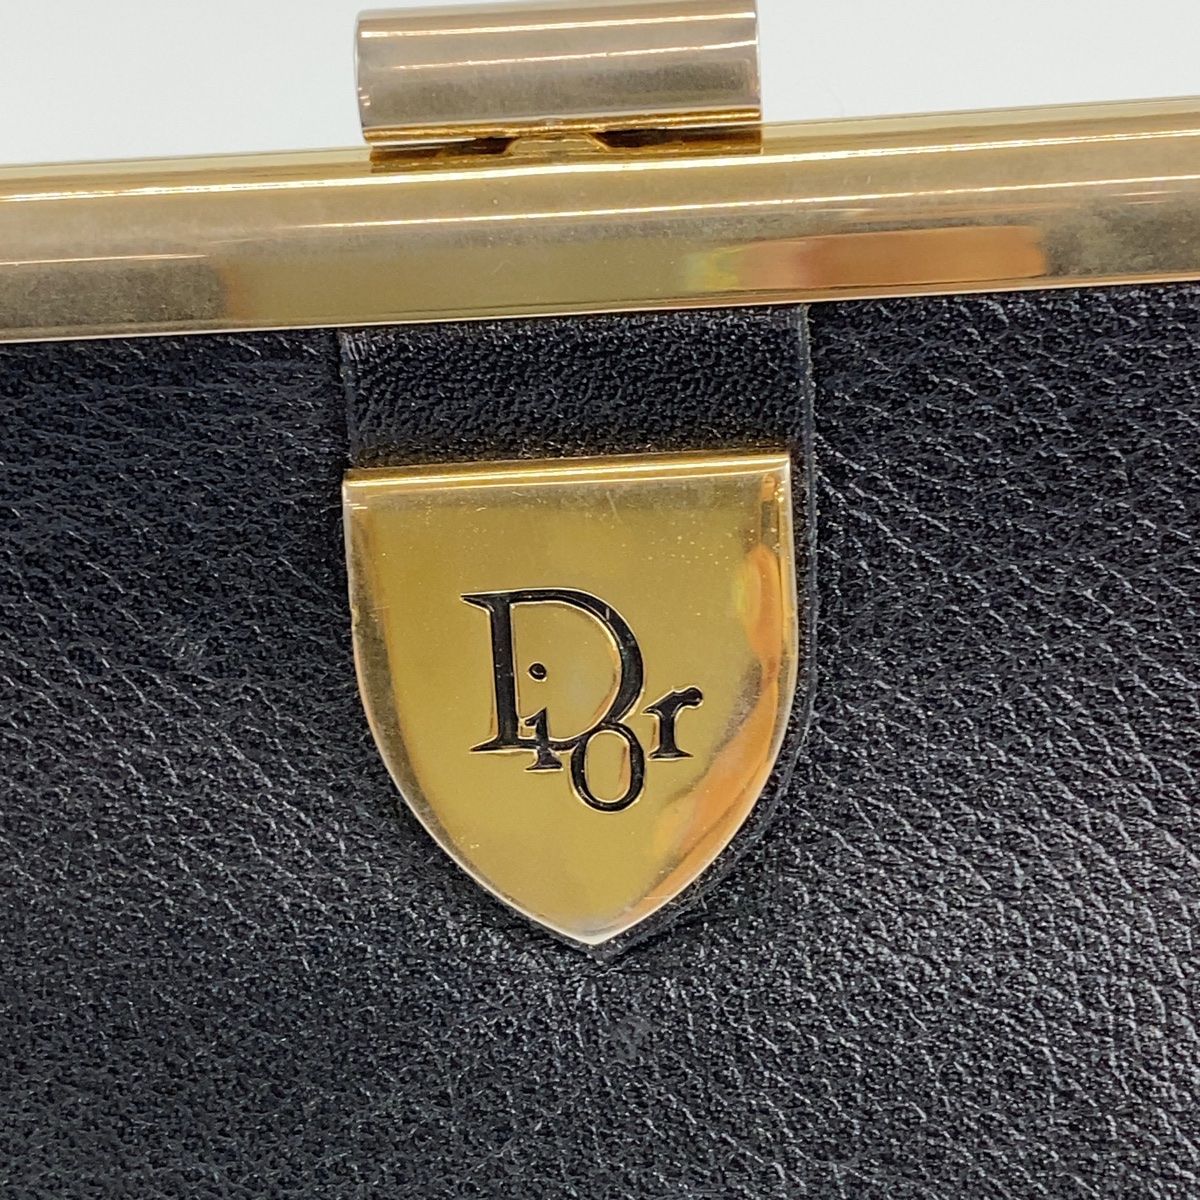 Christian Dior クリスチャンディオール ヴィンテージ ブラック 黒 ゴールド金具 レザー クラッチバッグ セカンドバッグ レディース 402736